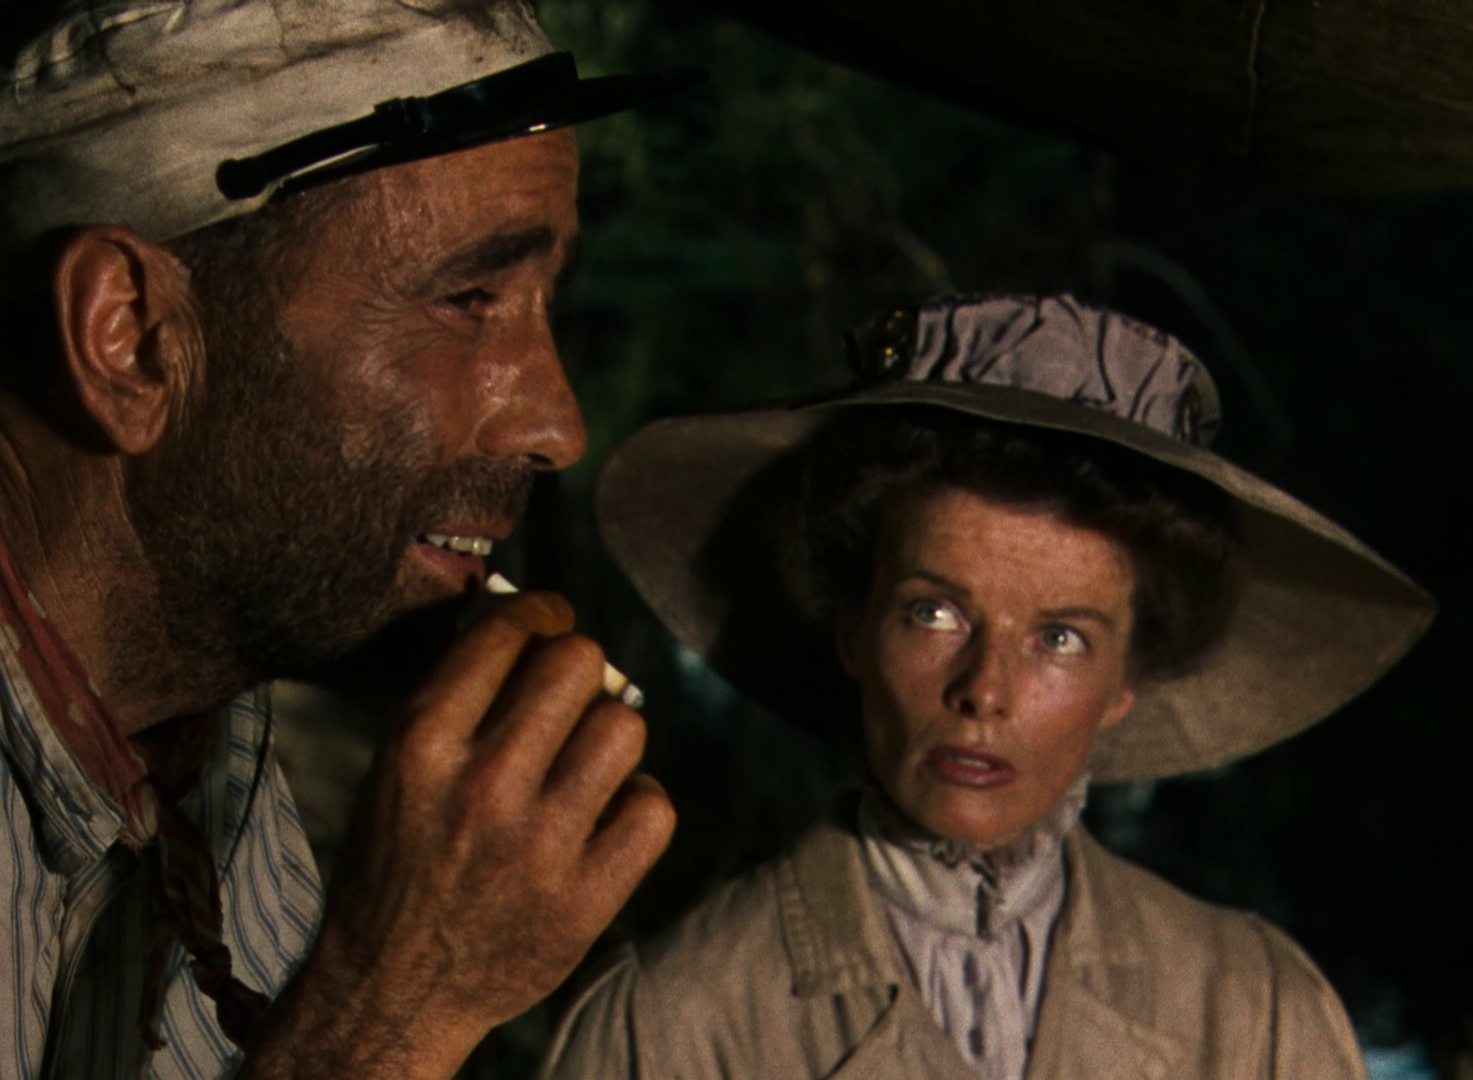 Humphrey Bogart mit Vollbart und Zigarette als abgekämpfter Bootskapitän, Katharine Hepburn in vornehmer Haltung blickt zu ihm auf.